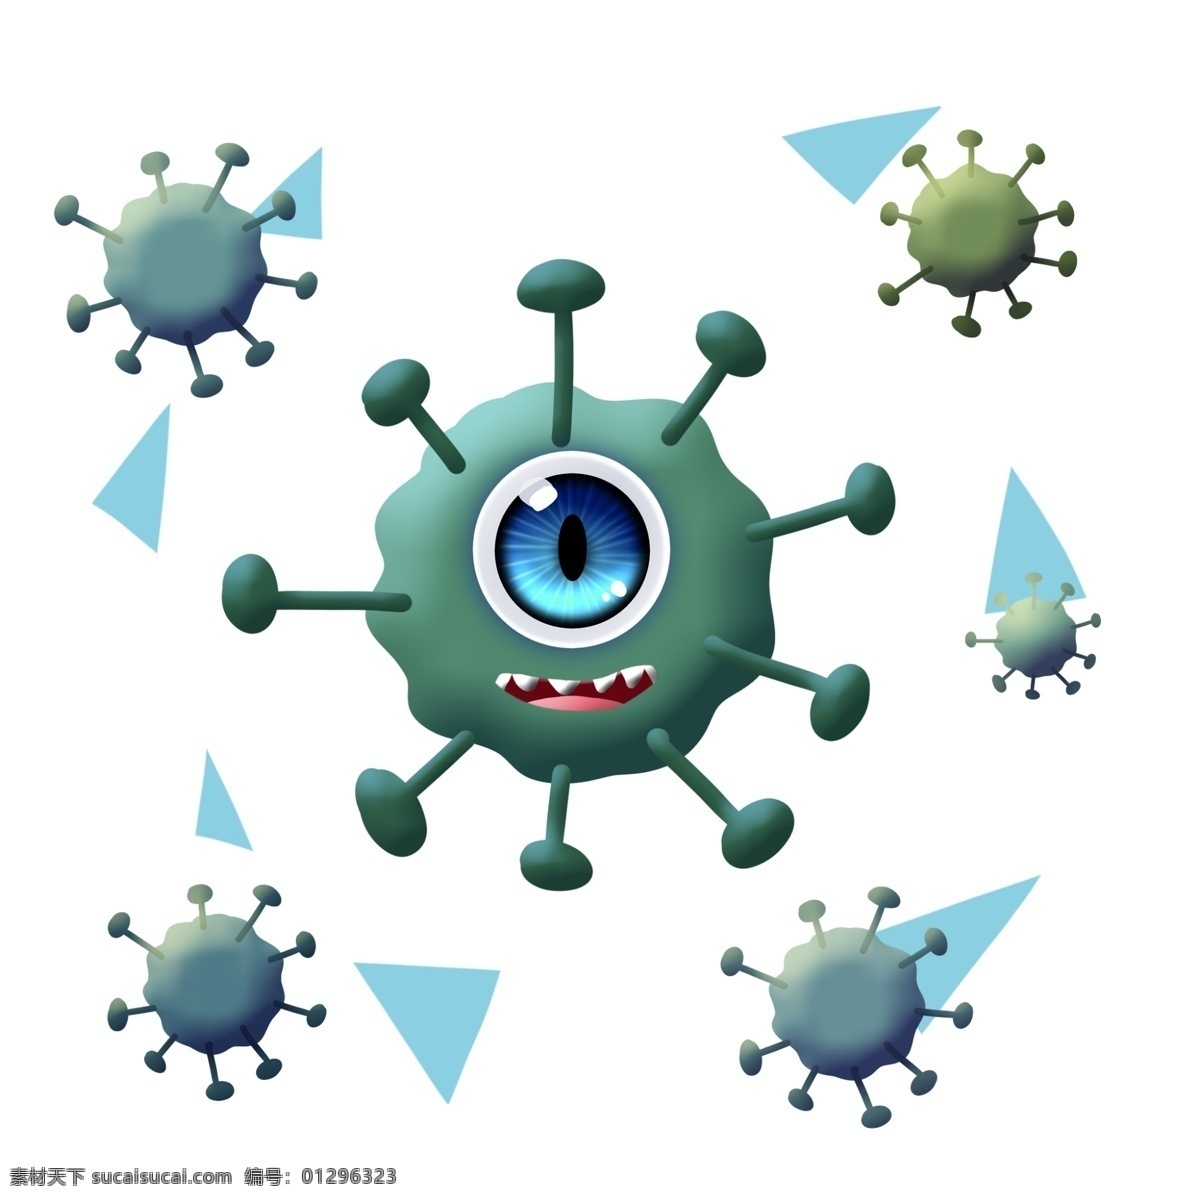 圆形 绿色 尖牙 独 眼 细菌 卡通 独眼 大眼睛 圆点 串连 杆菌 病毒 医学 生物 疾病 生病 菌体 菌状 细胞